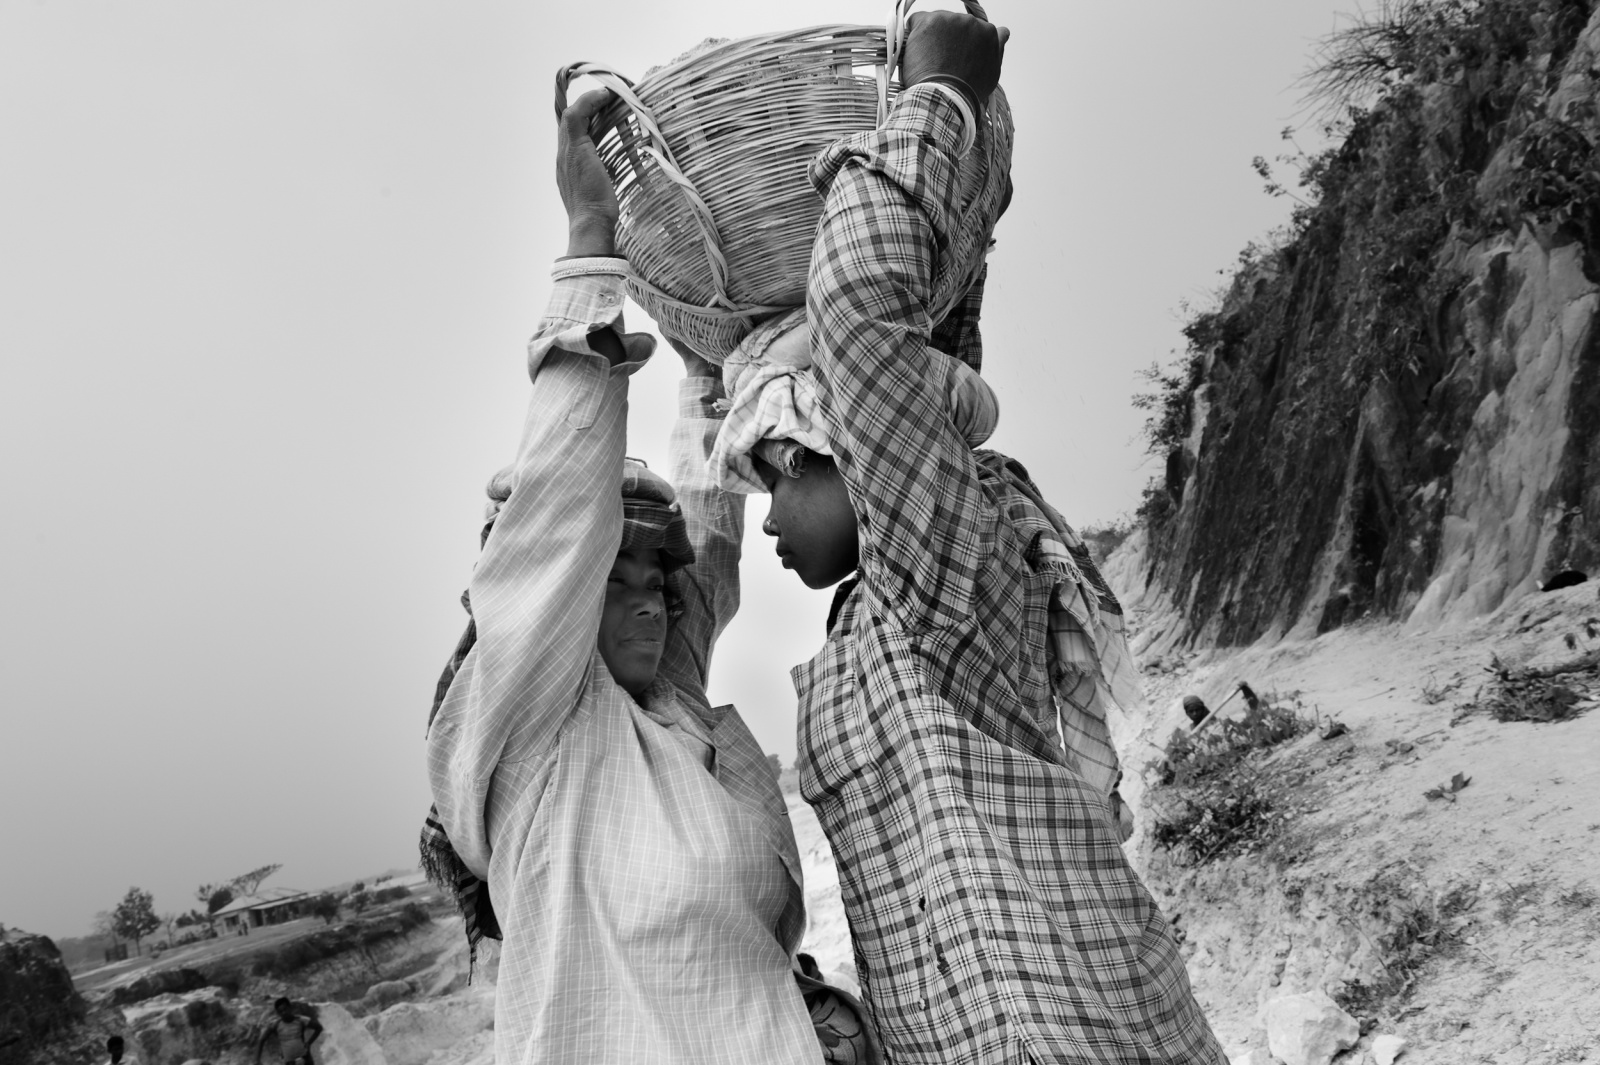 donne raccolgono sassi in una cava per la produzione edilizia